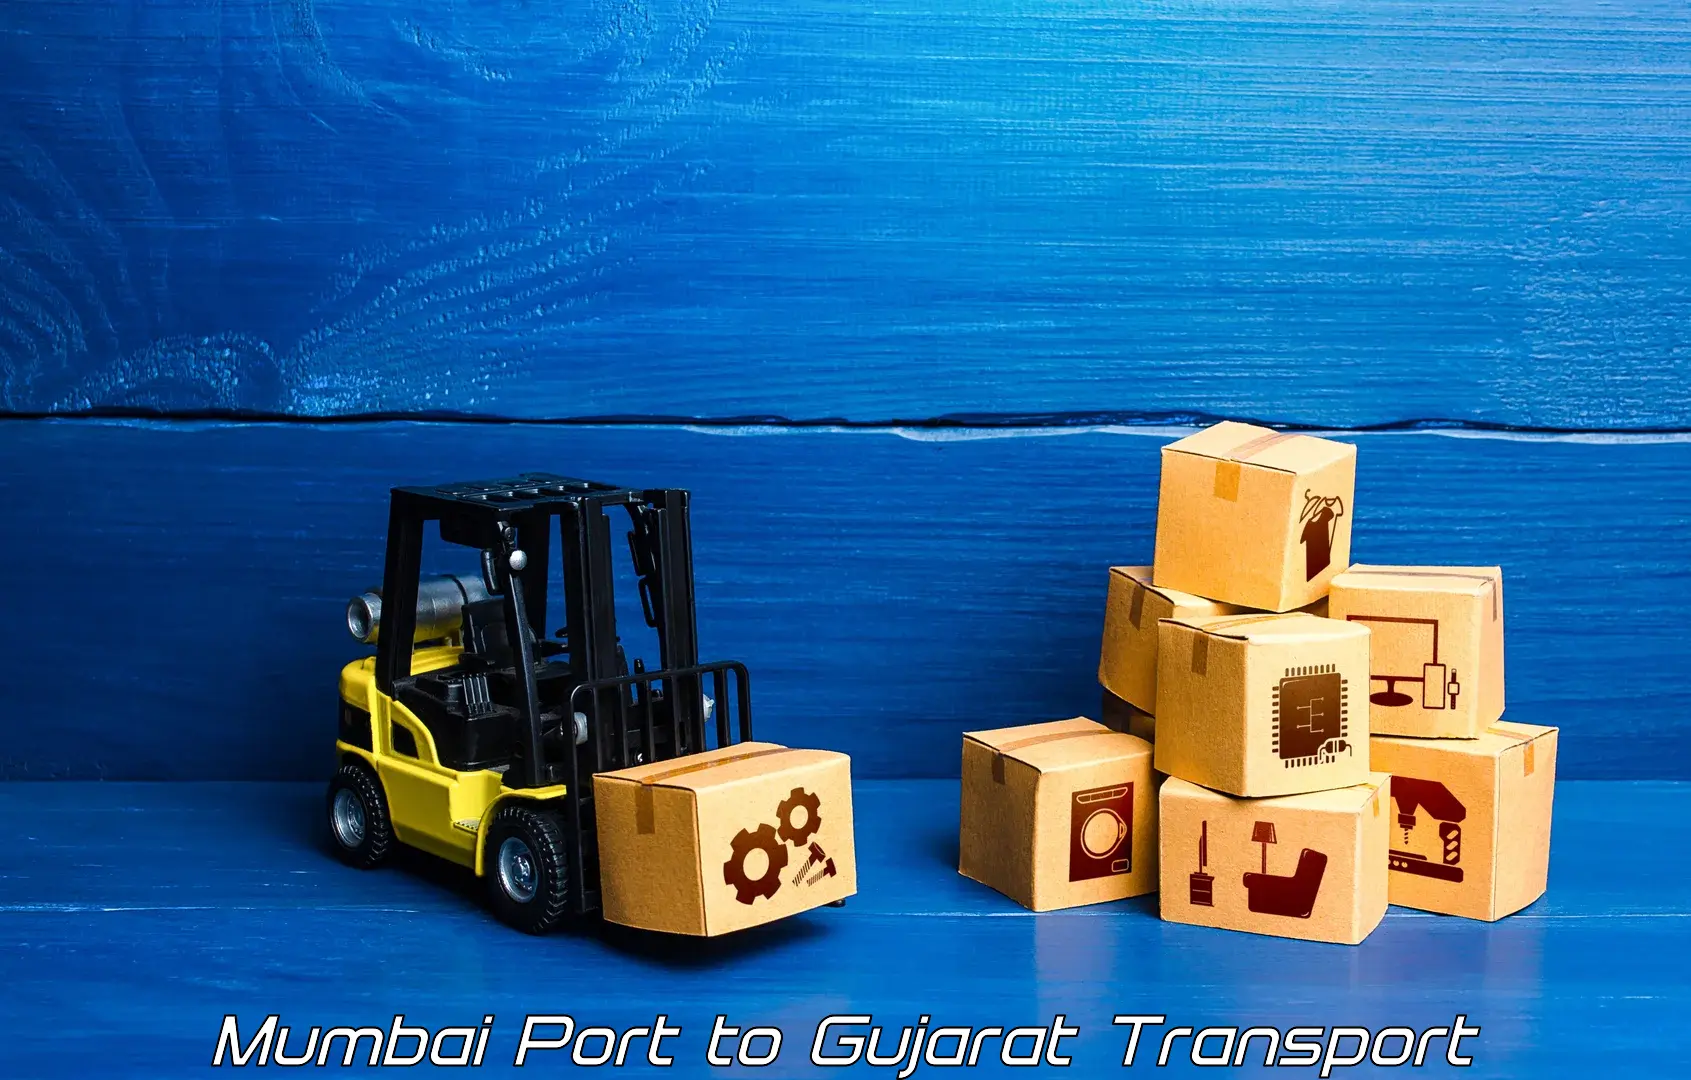 Air freight transport services Mumbai Port to Gujarat